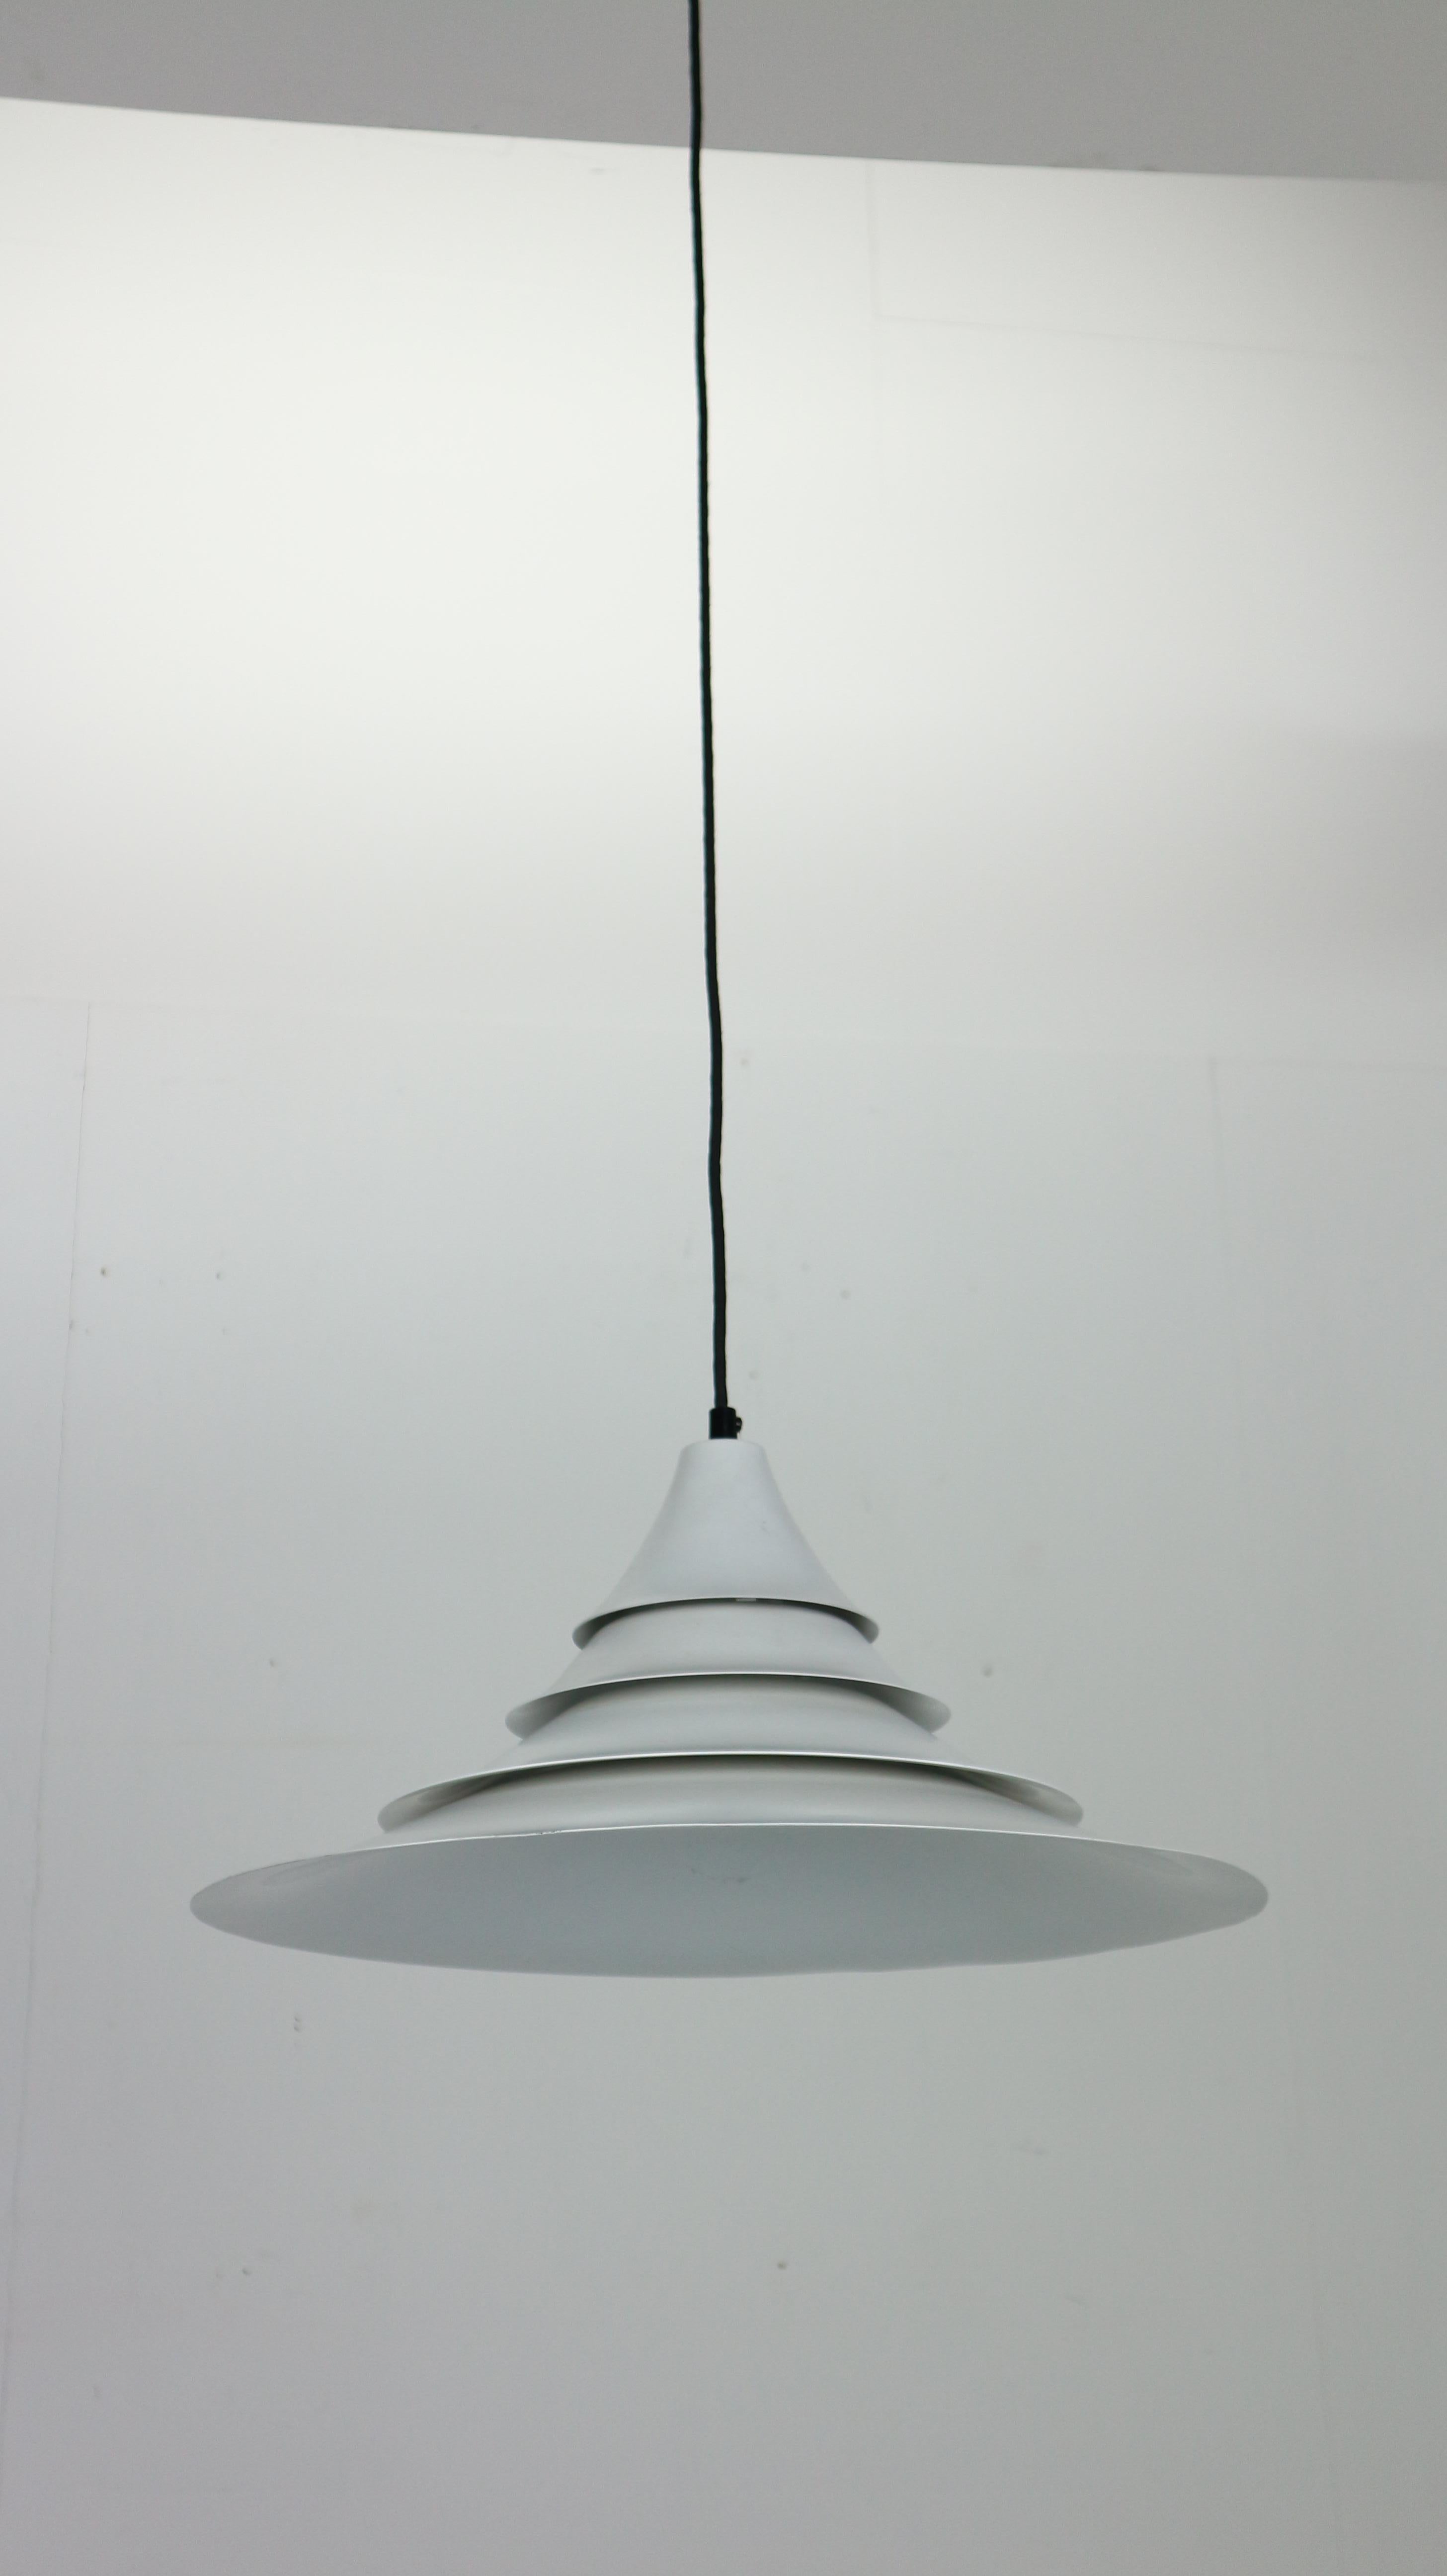 Weiße Hängelampe im modernen dänischen Design, hergestellt in den 1960er Jahren in Dänemark.
Die Lampe aus weißem Metall ist aus verschiedenen Scheiben zusammengesetzt und sorgt für eine warme und gemütliche Beleuchtung in Ihrem Designhaus.
Die